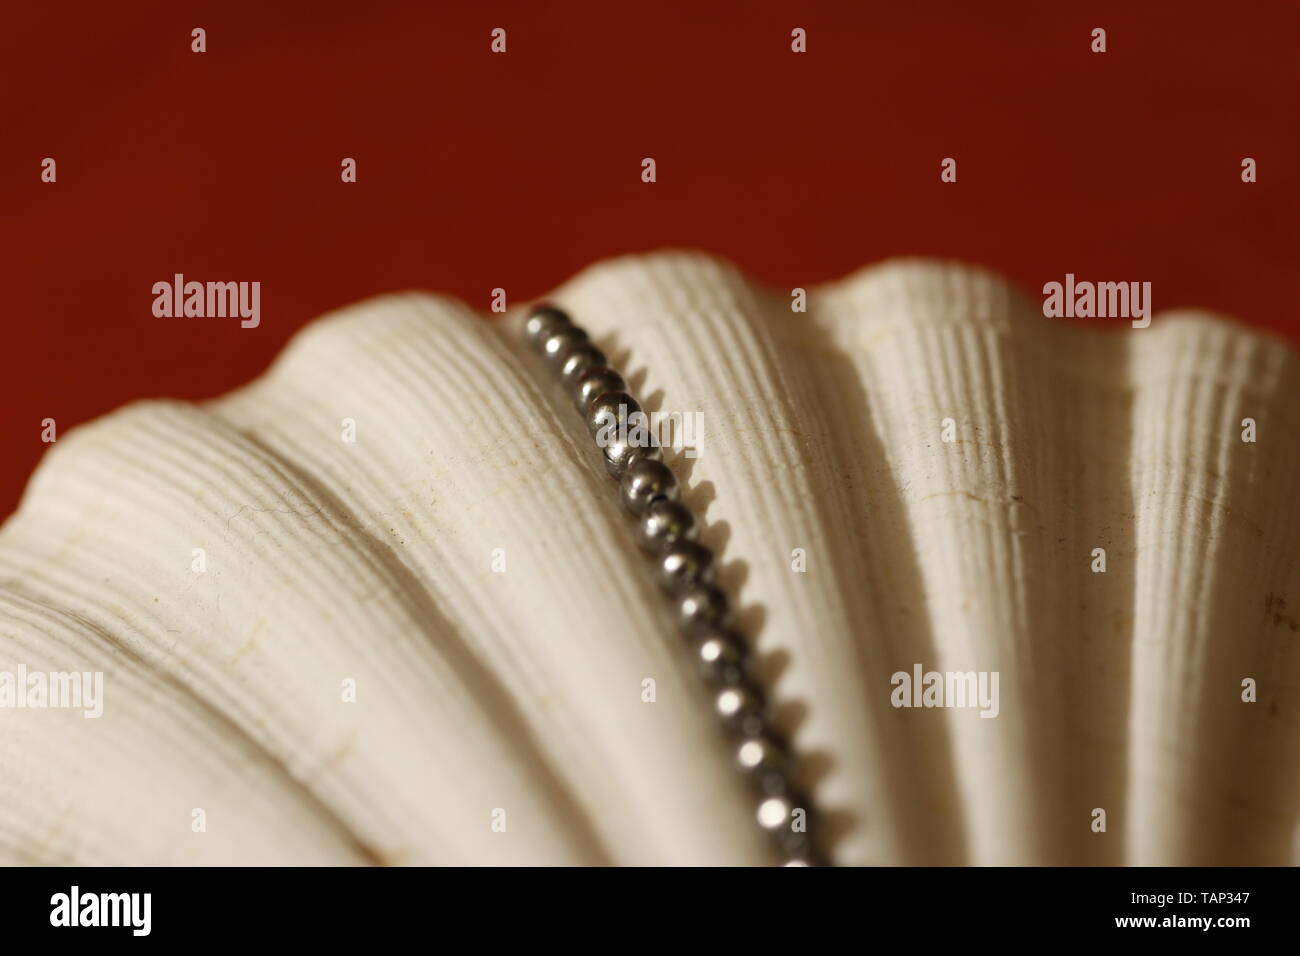 Immagine astratta che mostra una catena di piccole sfere di argento prevista entro le creste di un bianco smerlo shell Foto Stock